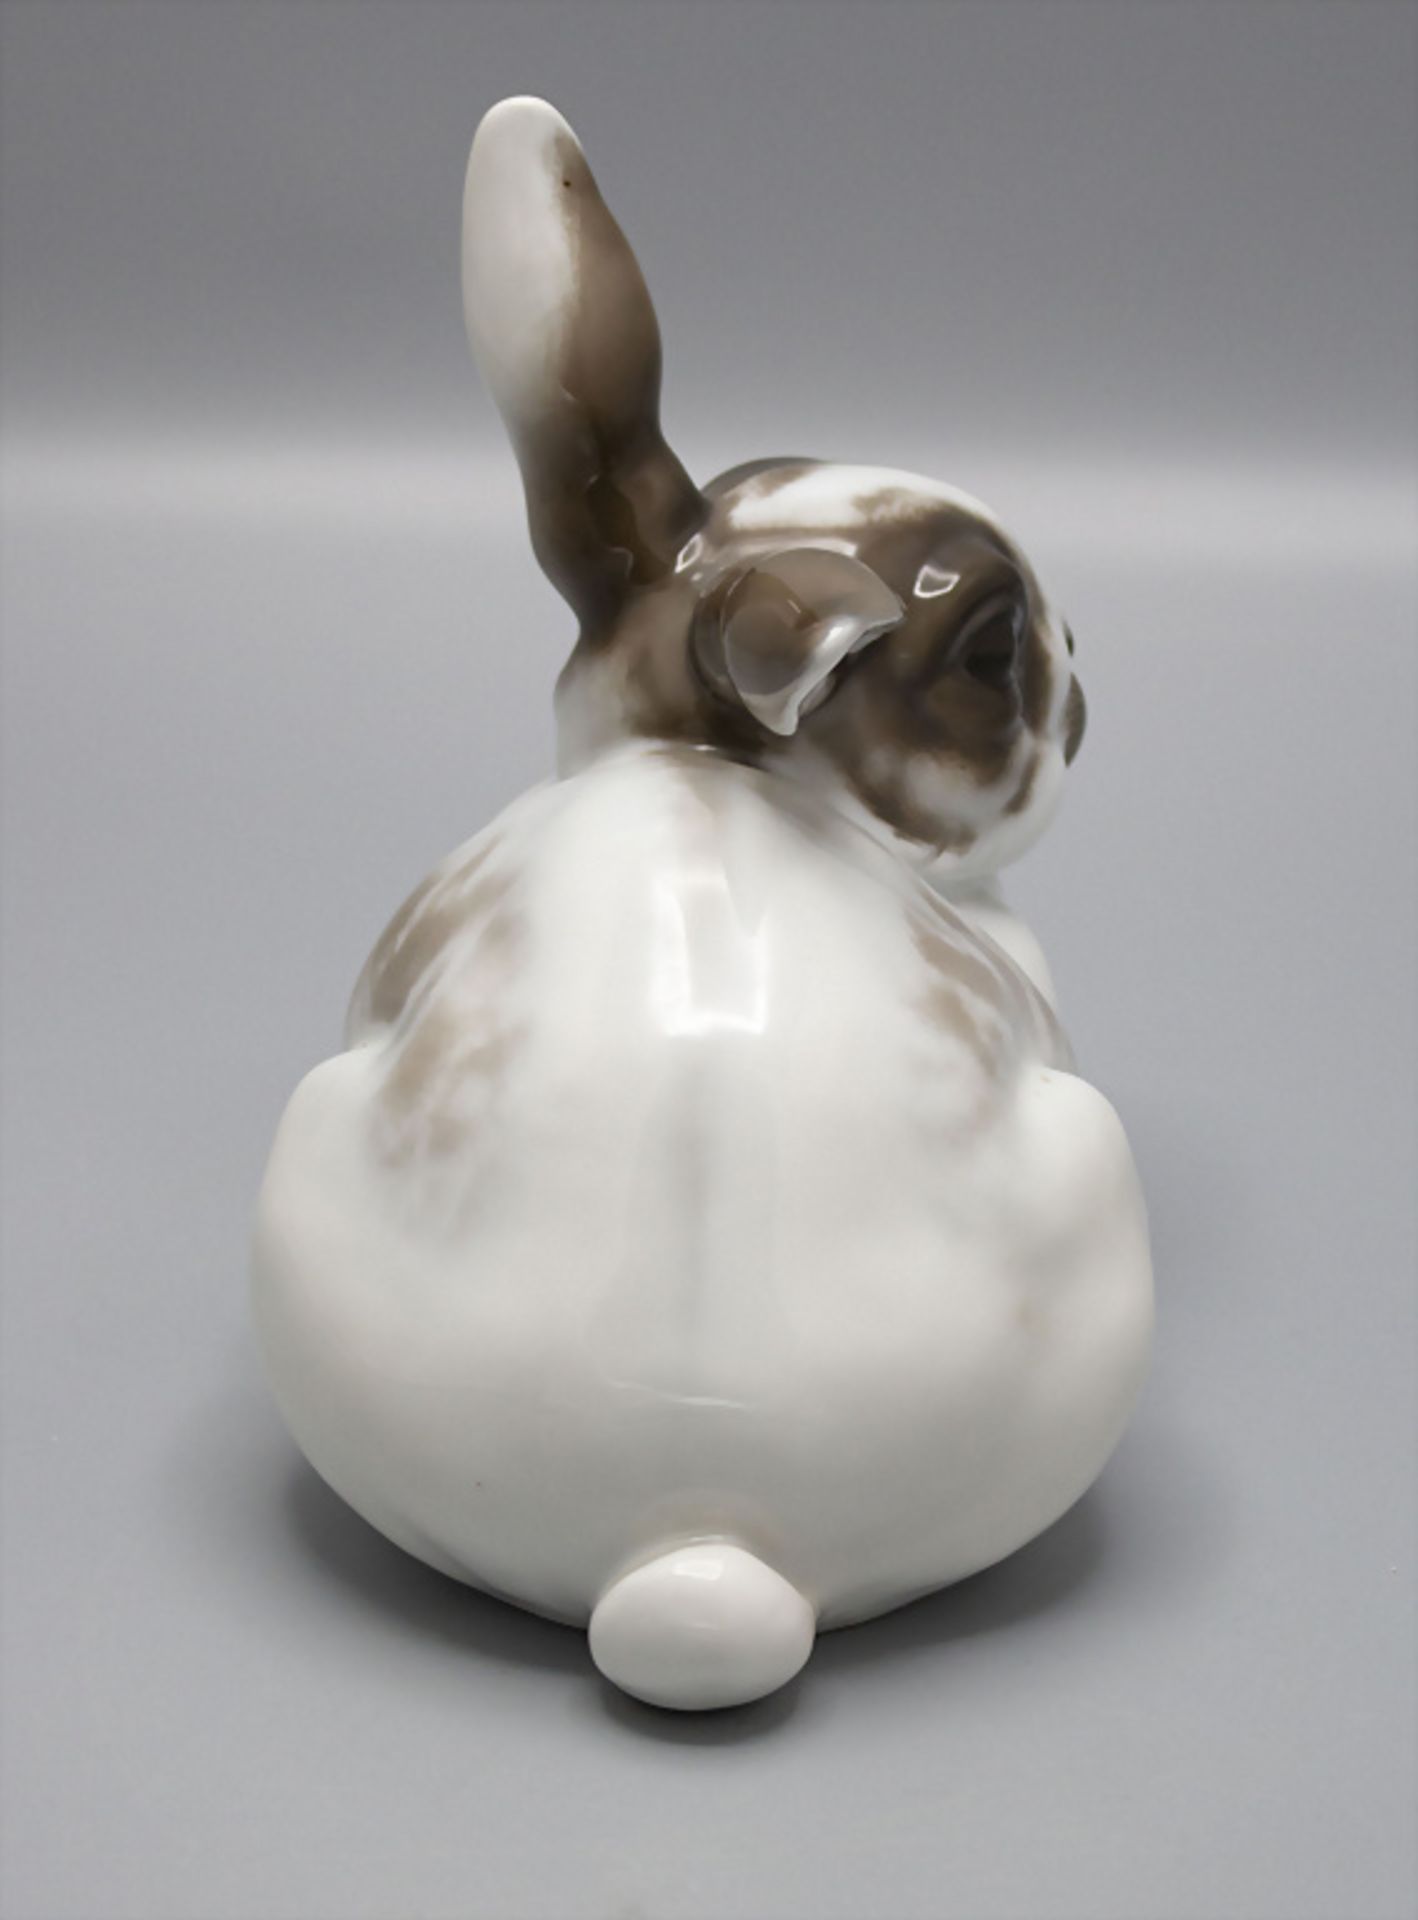 Porzellanhase / A porcelain rabbit, Karl Himmelsstoss (1872-1967), Rosenthal, Selb, um 1920 - Image 4 of 6